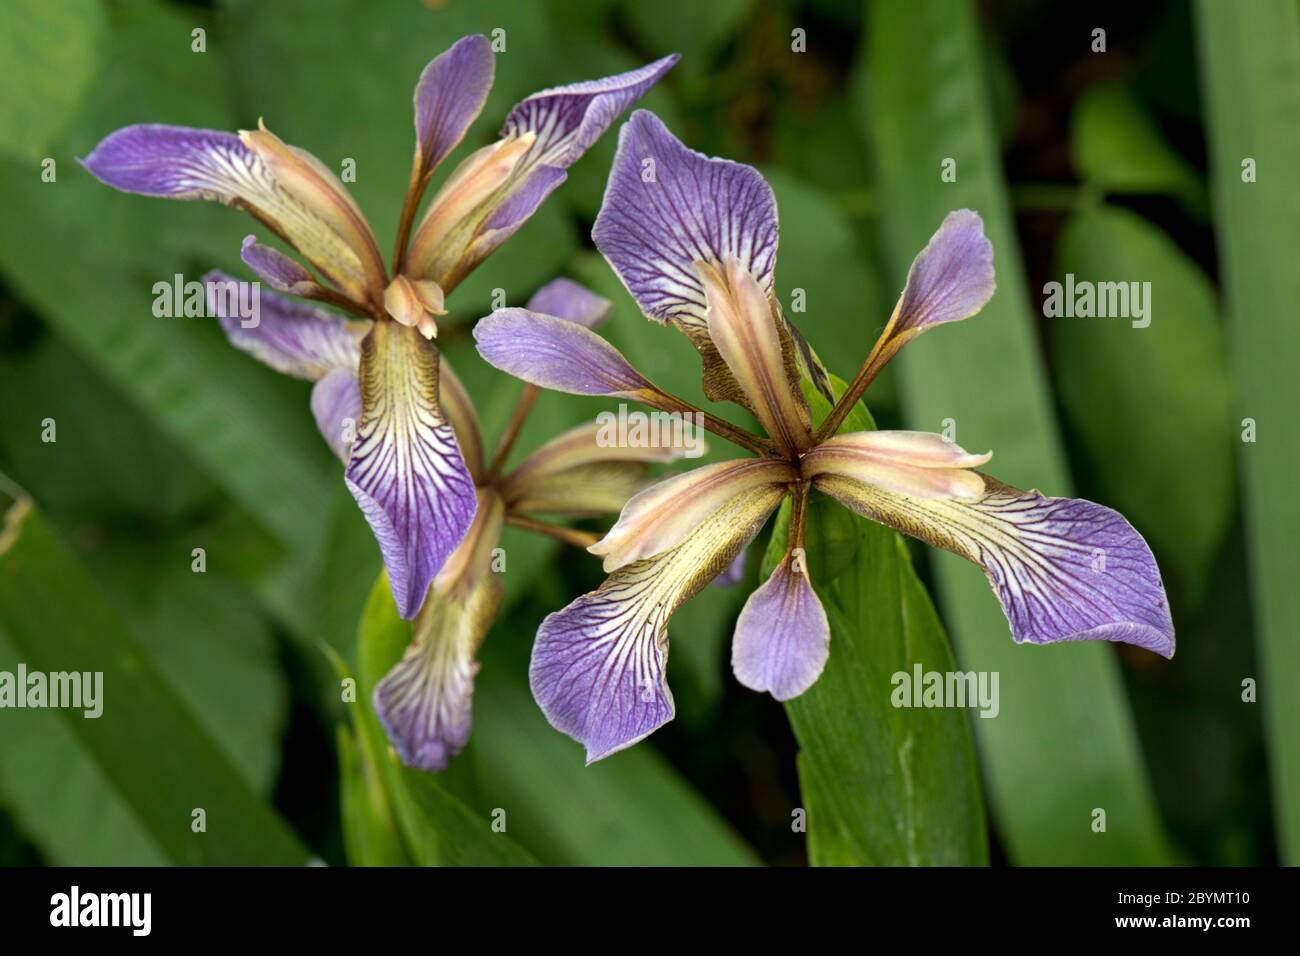 Fiore di iris in stordimento, gladcon o arrosto-manzo pianta (Iris foetidissima) in bosco, Berkshire, giugno Foto Stock